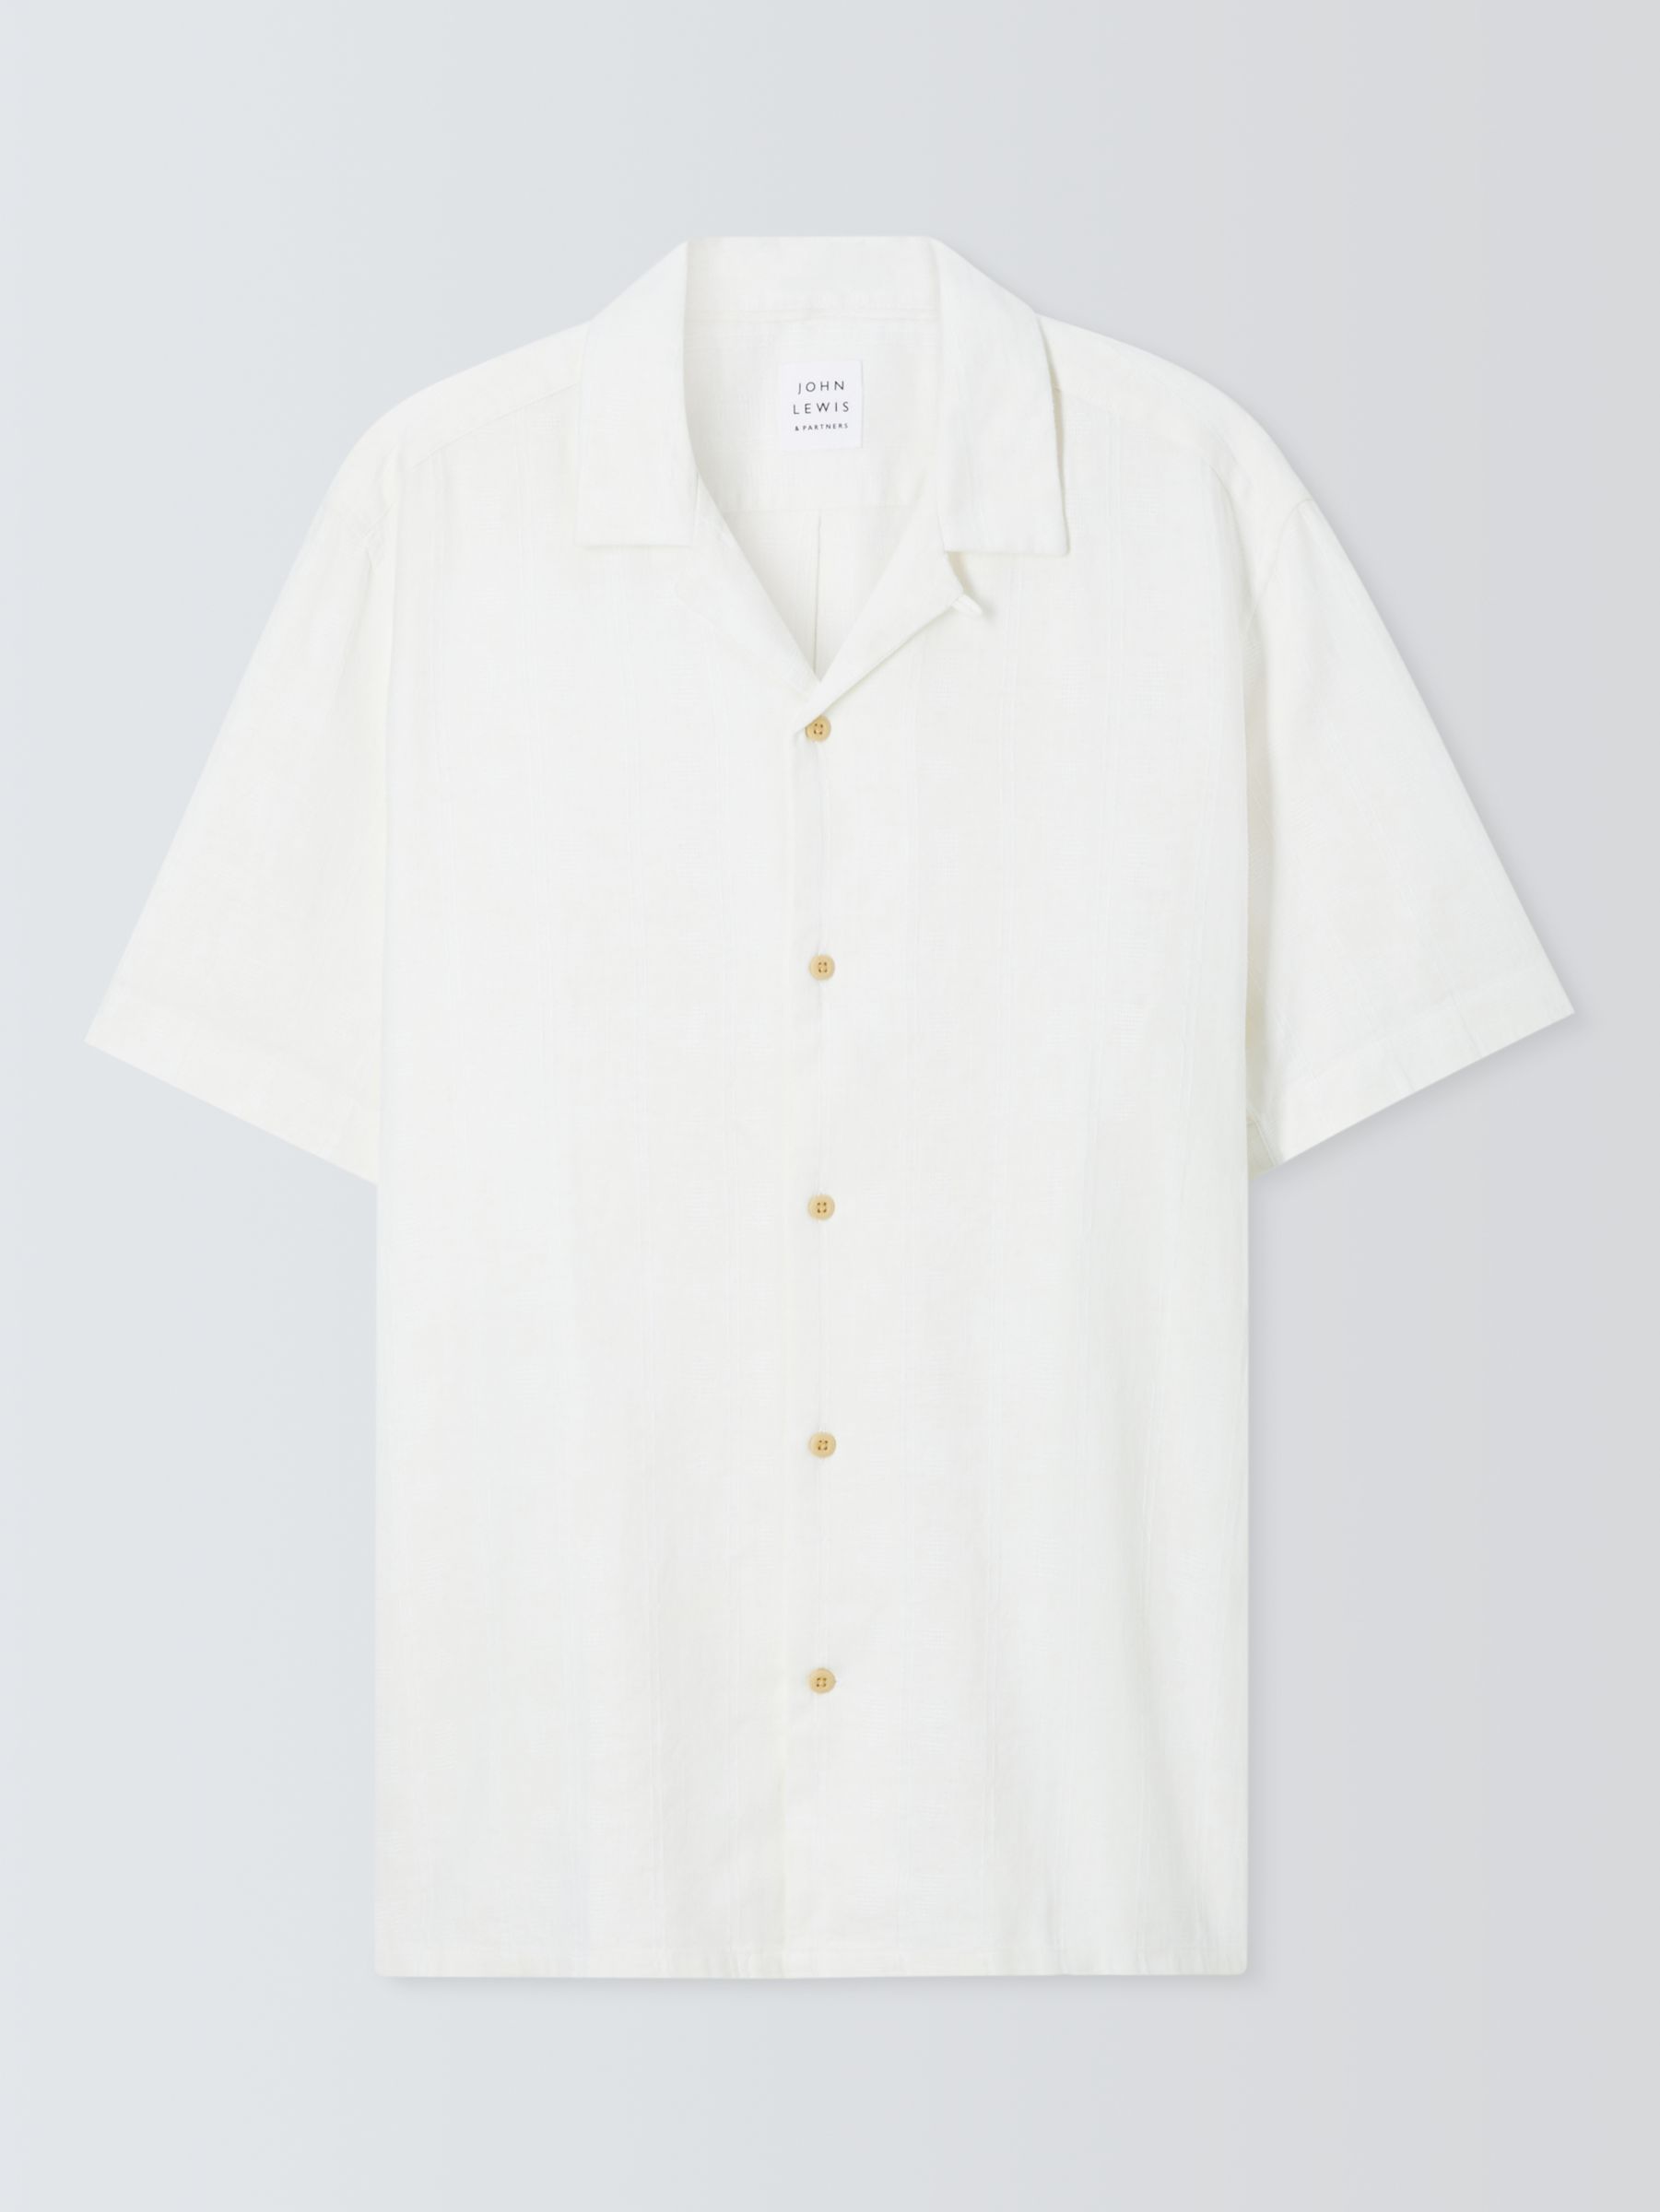 John Lewis Short Sleeve Textured Linen Blend Shirt, Ecru, S